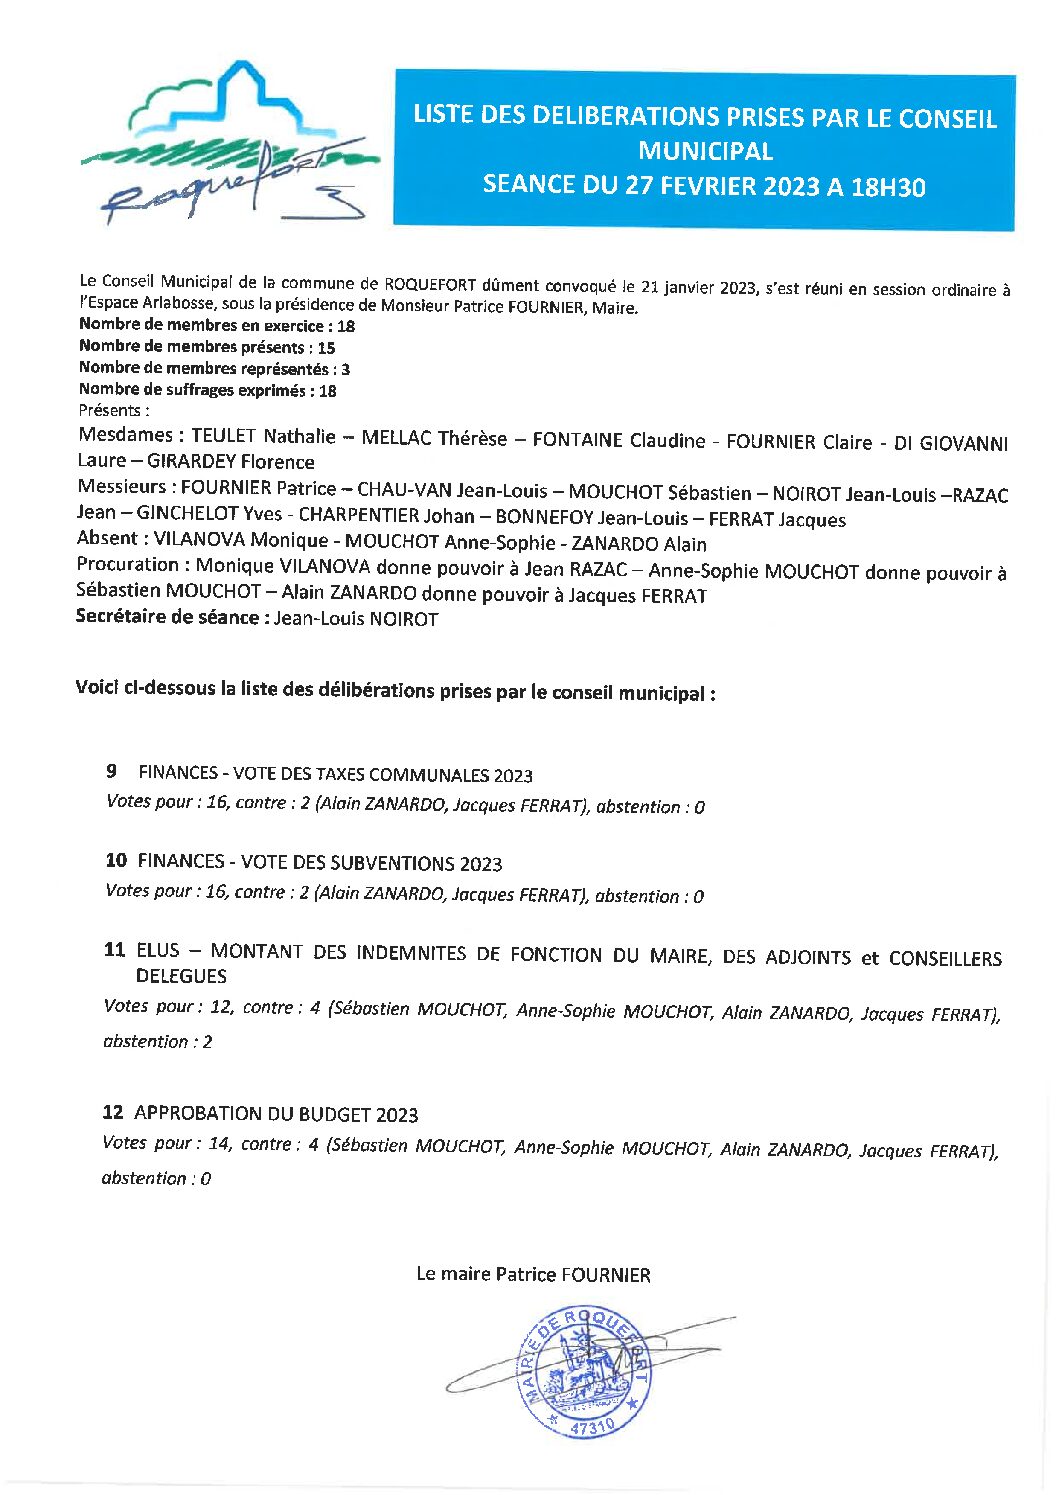 Liste des délibérations prises lors du conseil municipal du 27 février 2023